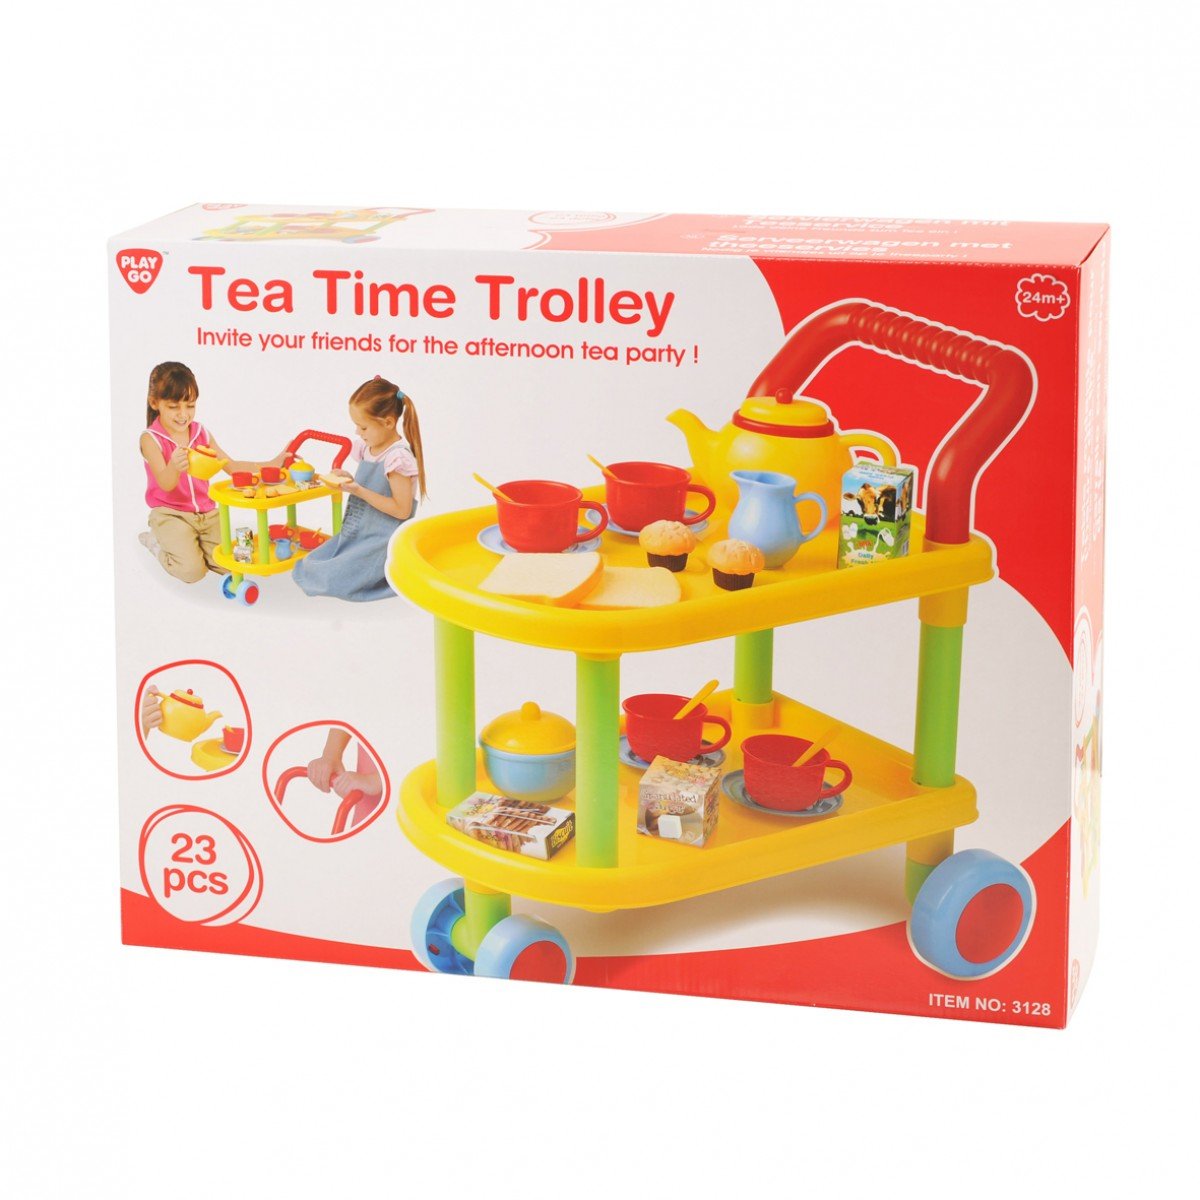 รถเข็นชุดชงชา Tea Time Trolley (รุ่น 3128) ยี่ห้อ PLAYGO